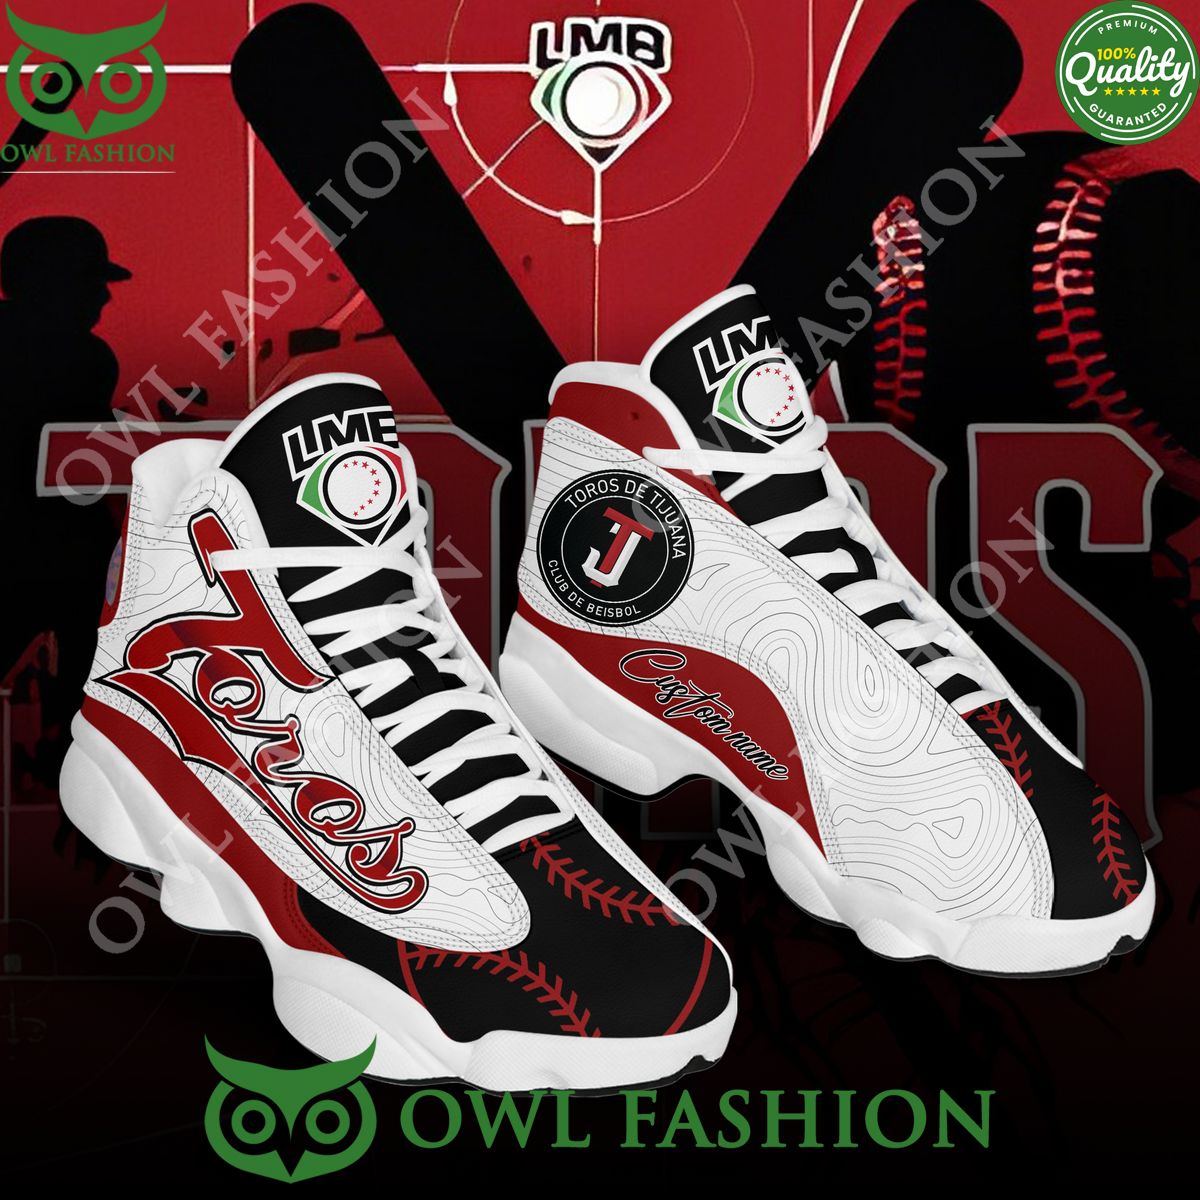 Baseball Mexican Toros de Tijuana LMB Personalized AJ13 Shoes Air Jordan